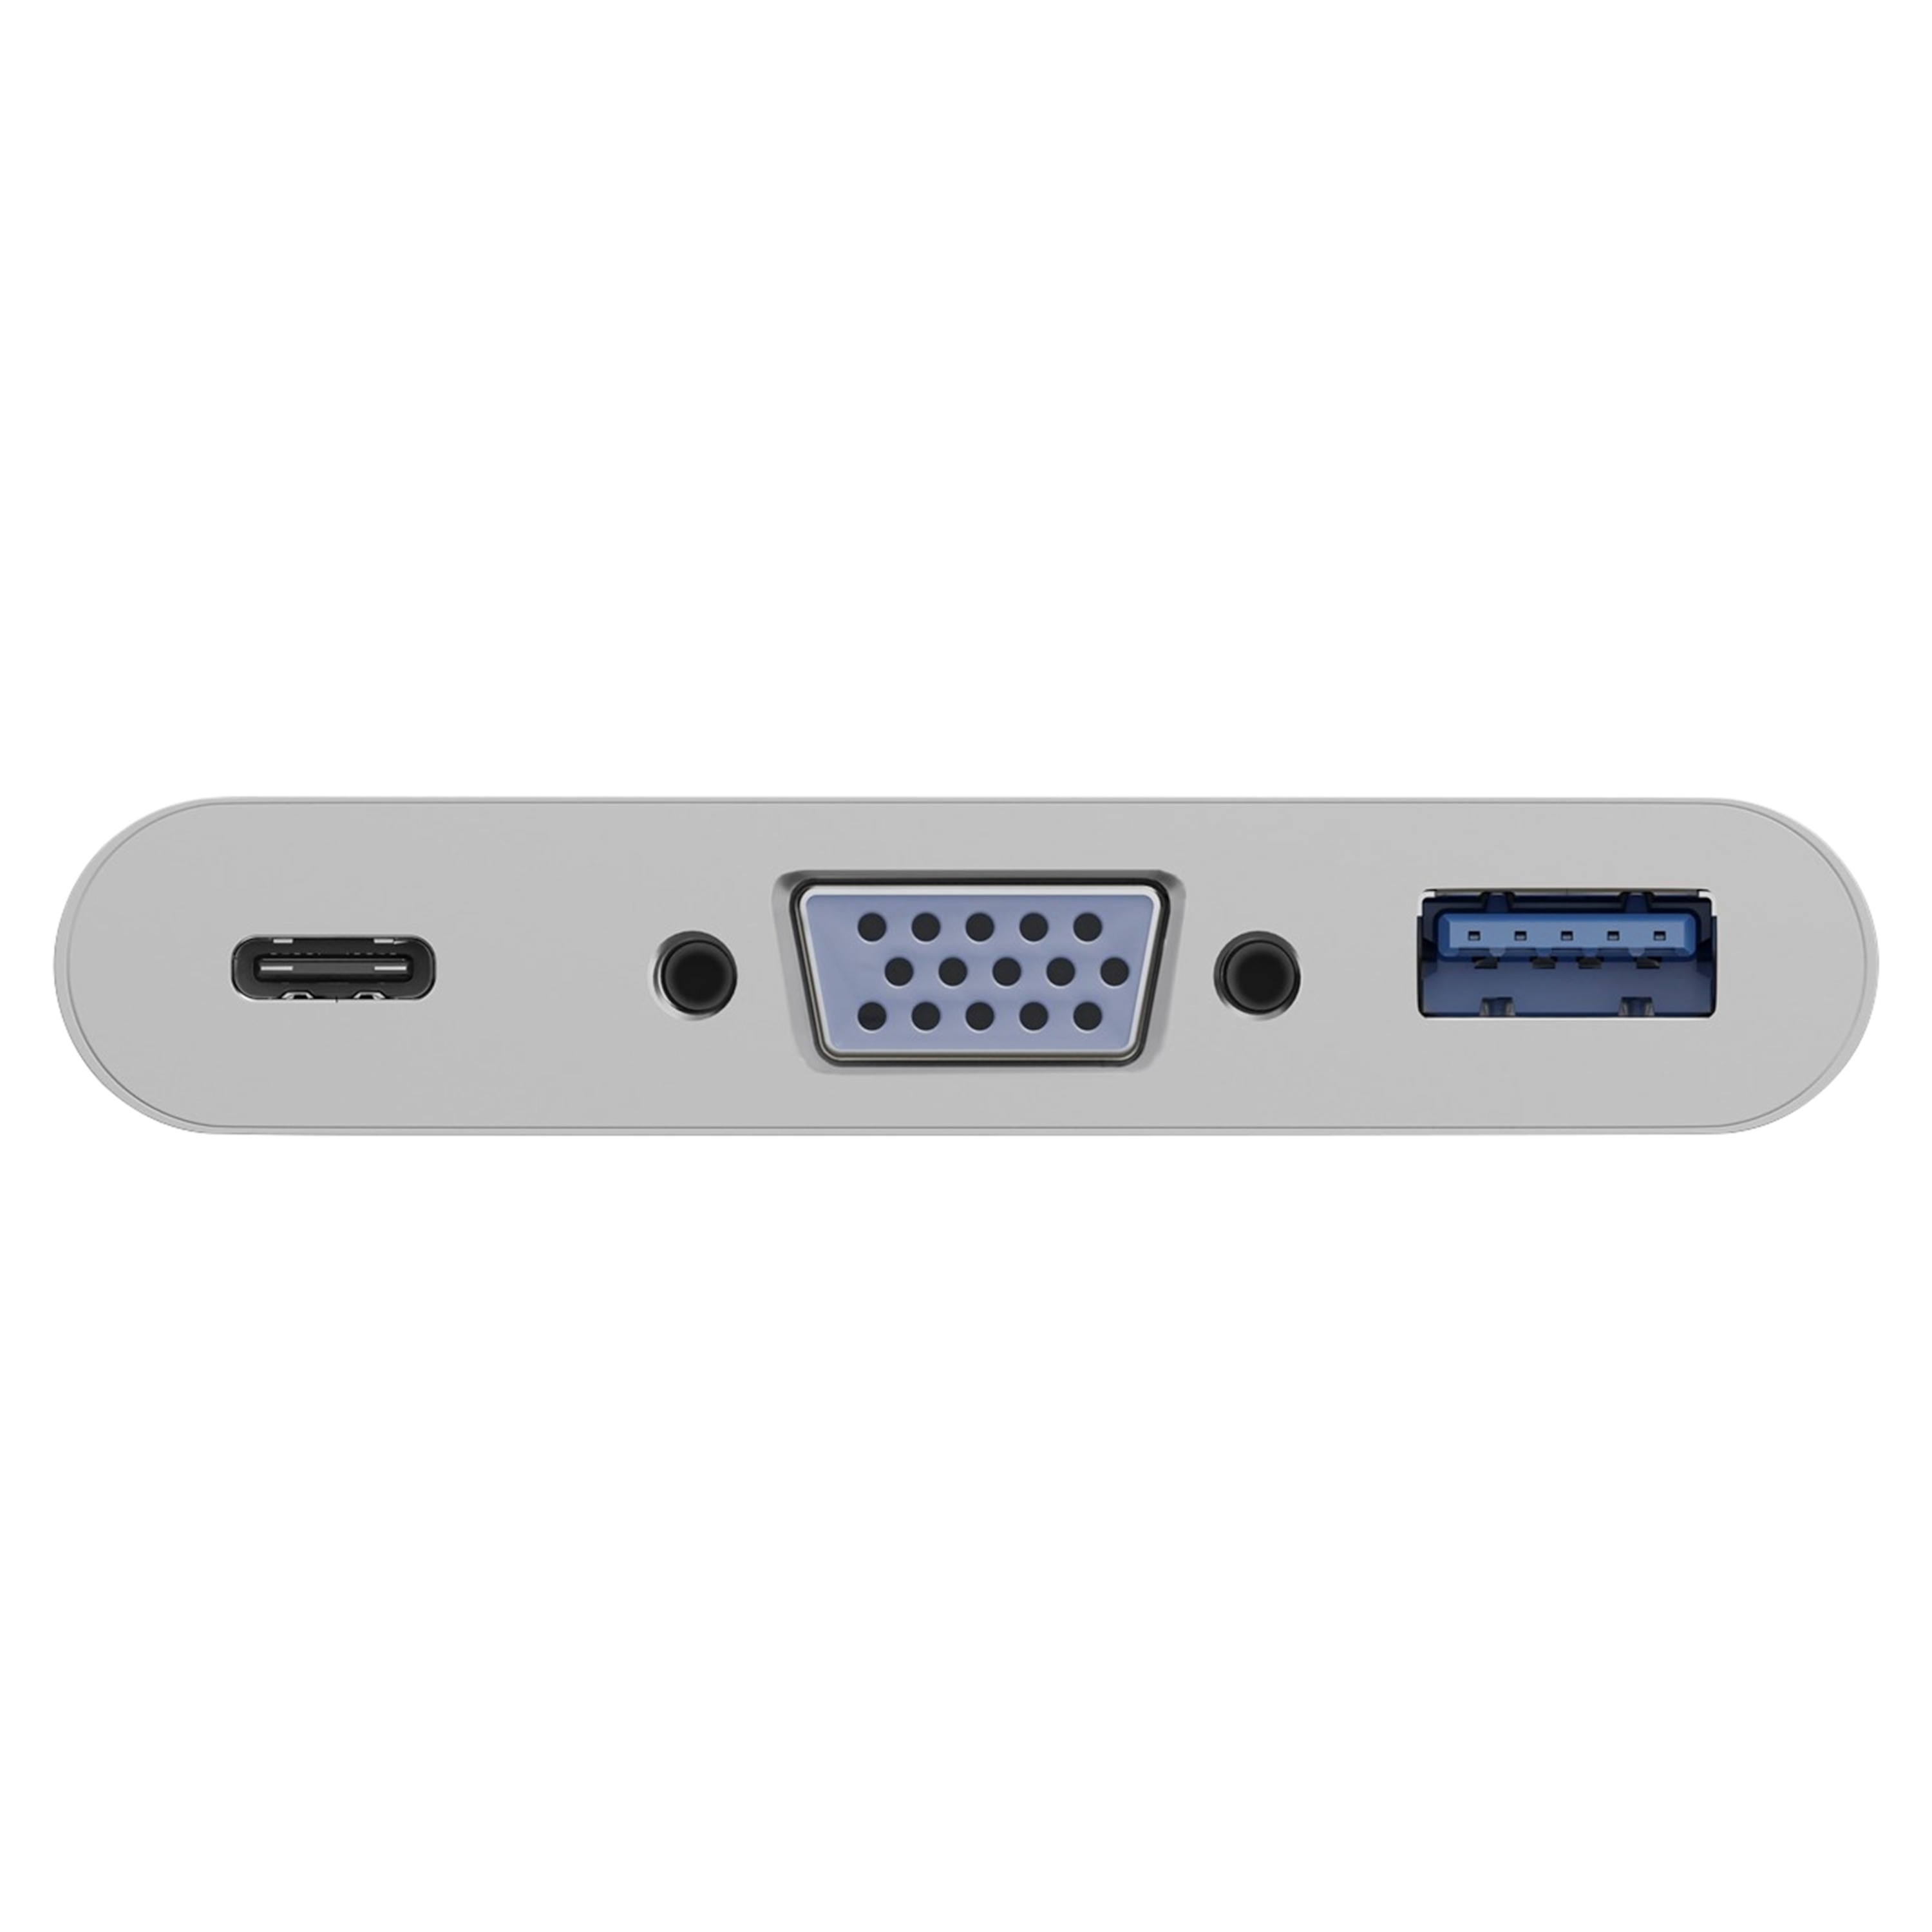 GOOBAY USB-C™ Multiport-Adapter VGA, USB-C™ auf USB 3.0 & VGA-Anschluss, geeignet für das MacBook, MacBook Pro und weitere Geräte mit USB-C™-Anschluss